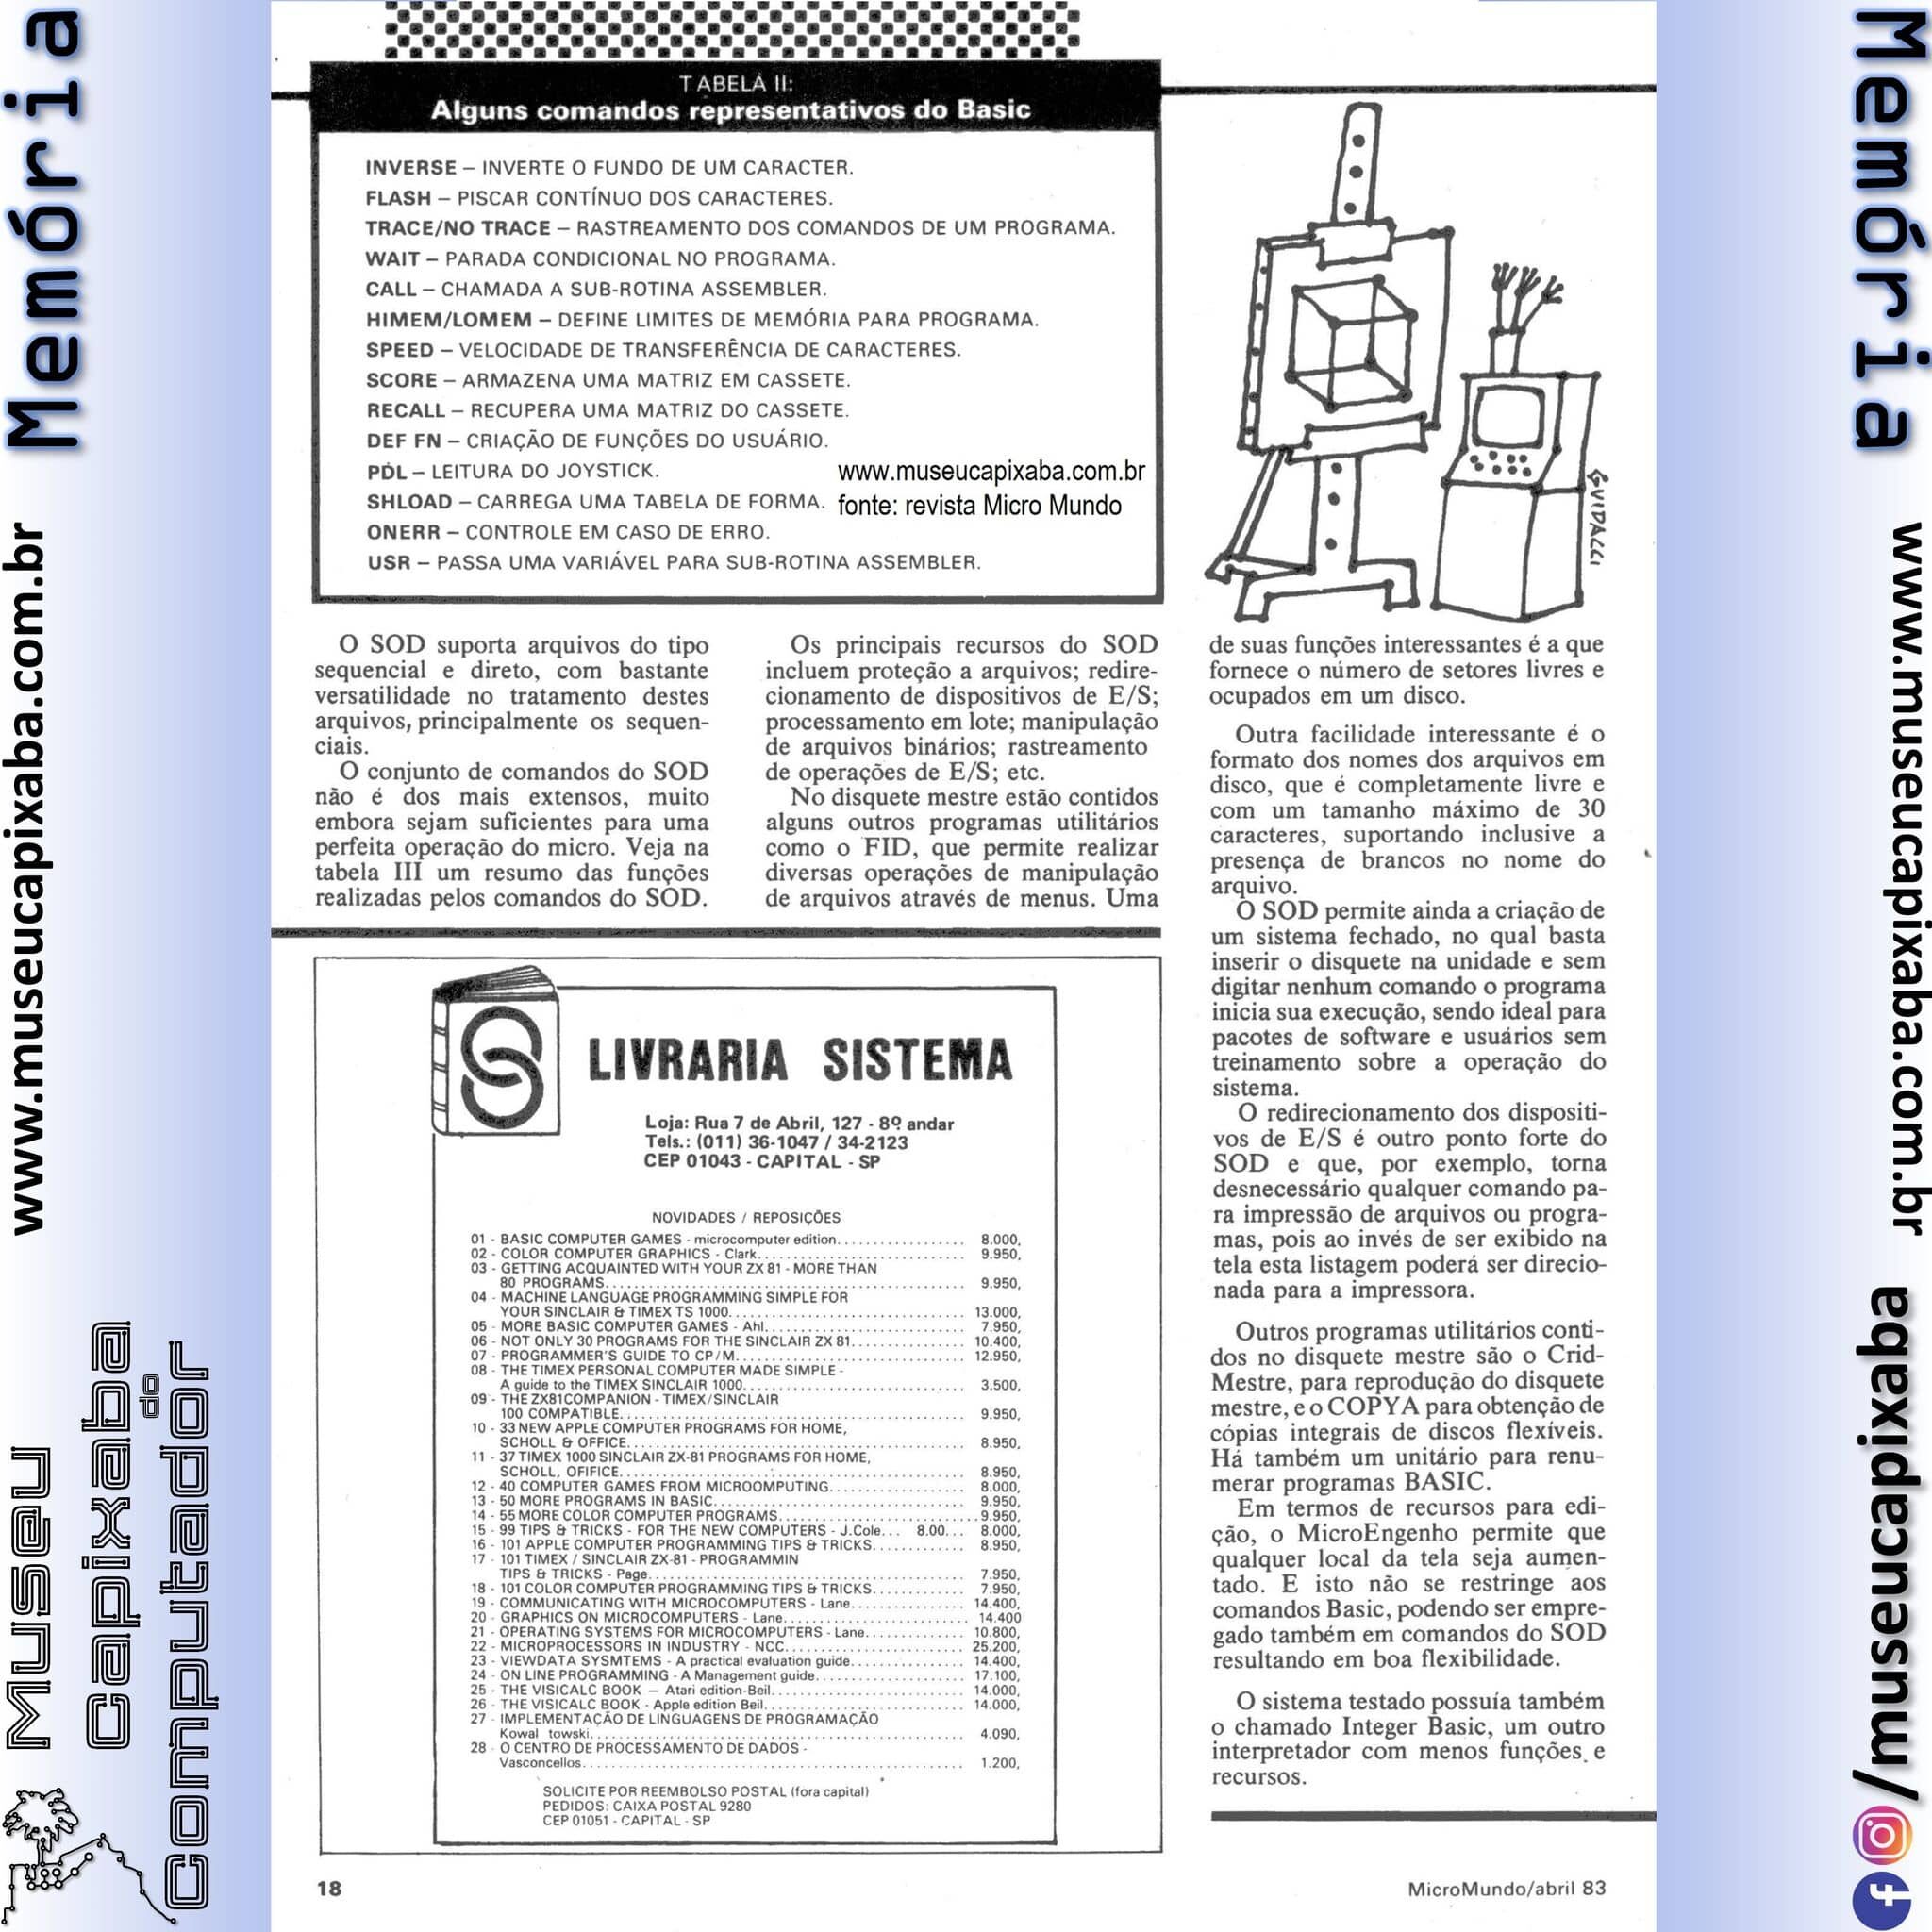 Spectrum Microengenho Review Revista Micromundo abr 1983 p3